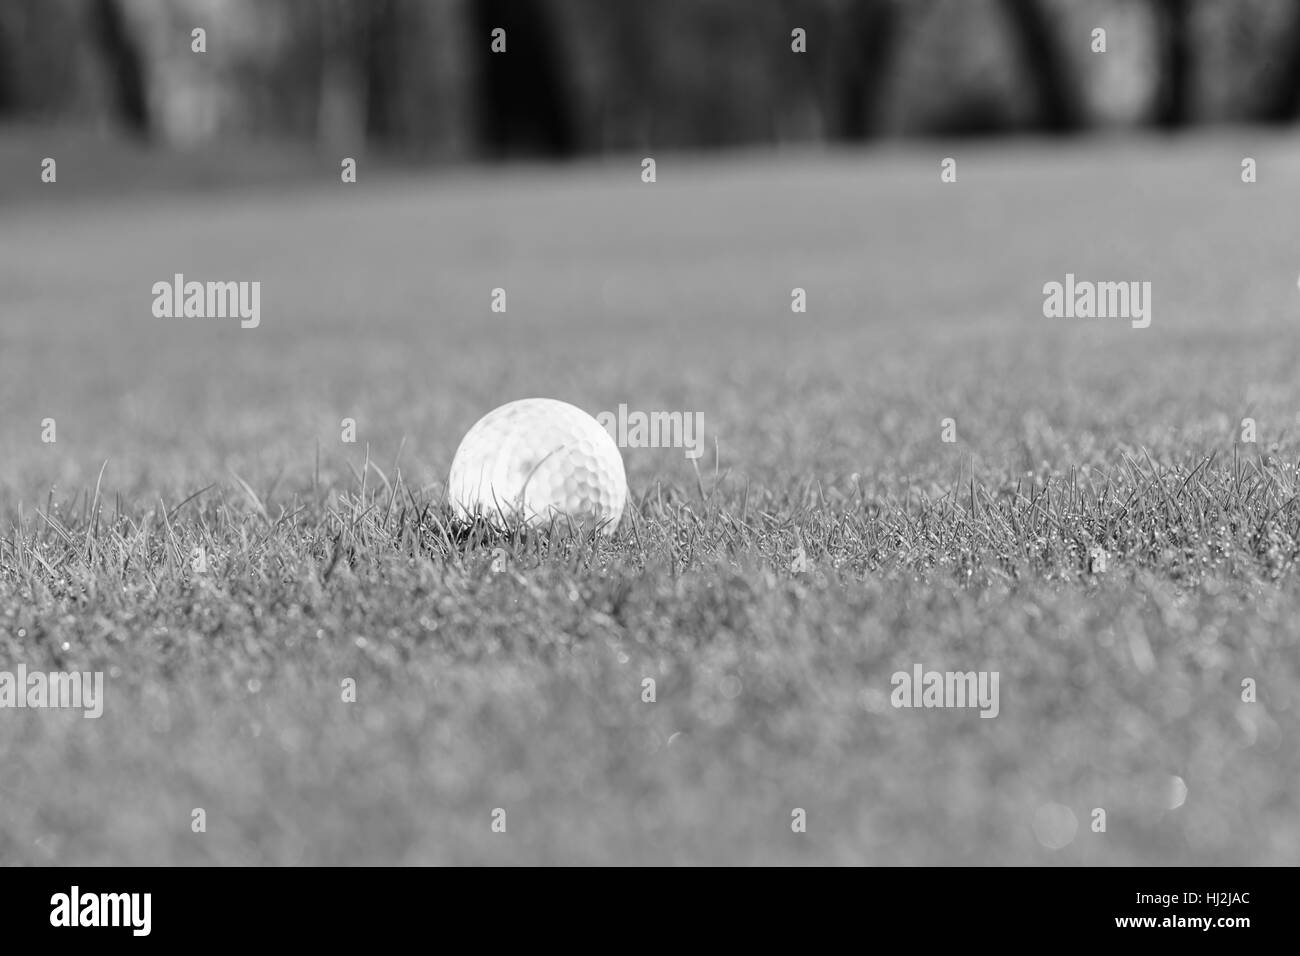 Palla da golf sul verde del prato, nota leggera profondità di campo Foto Stock